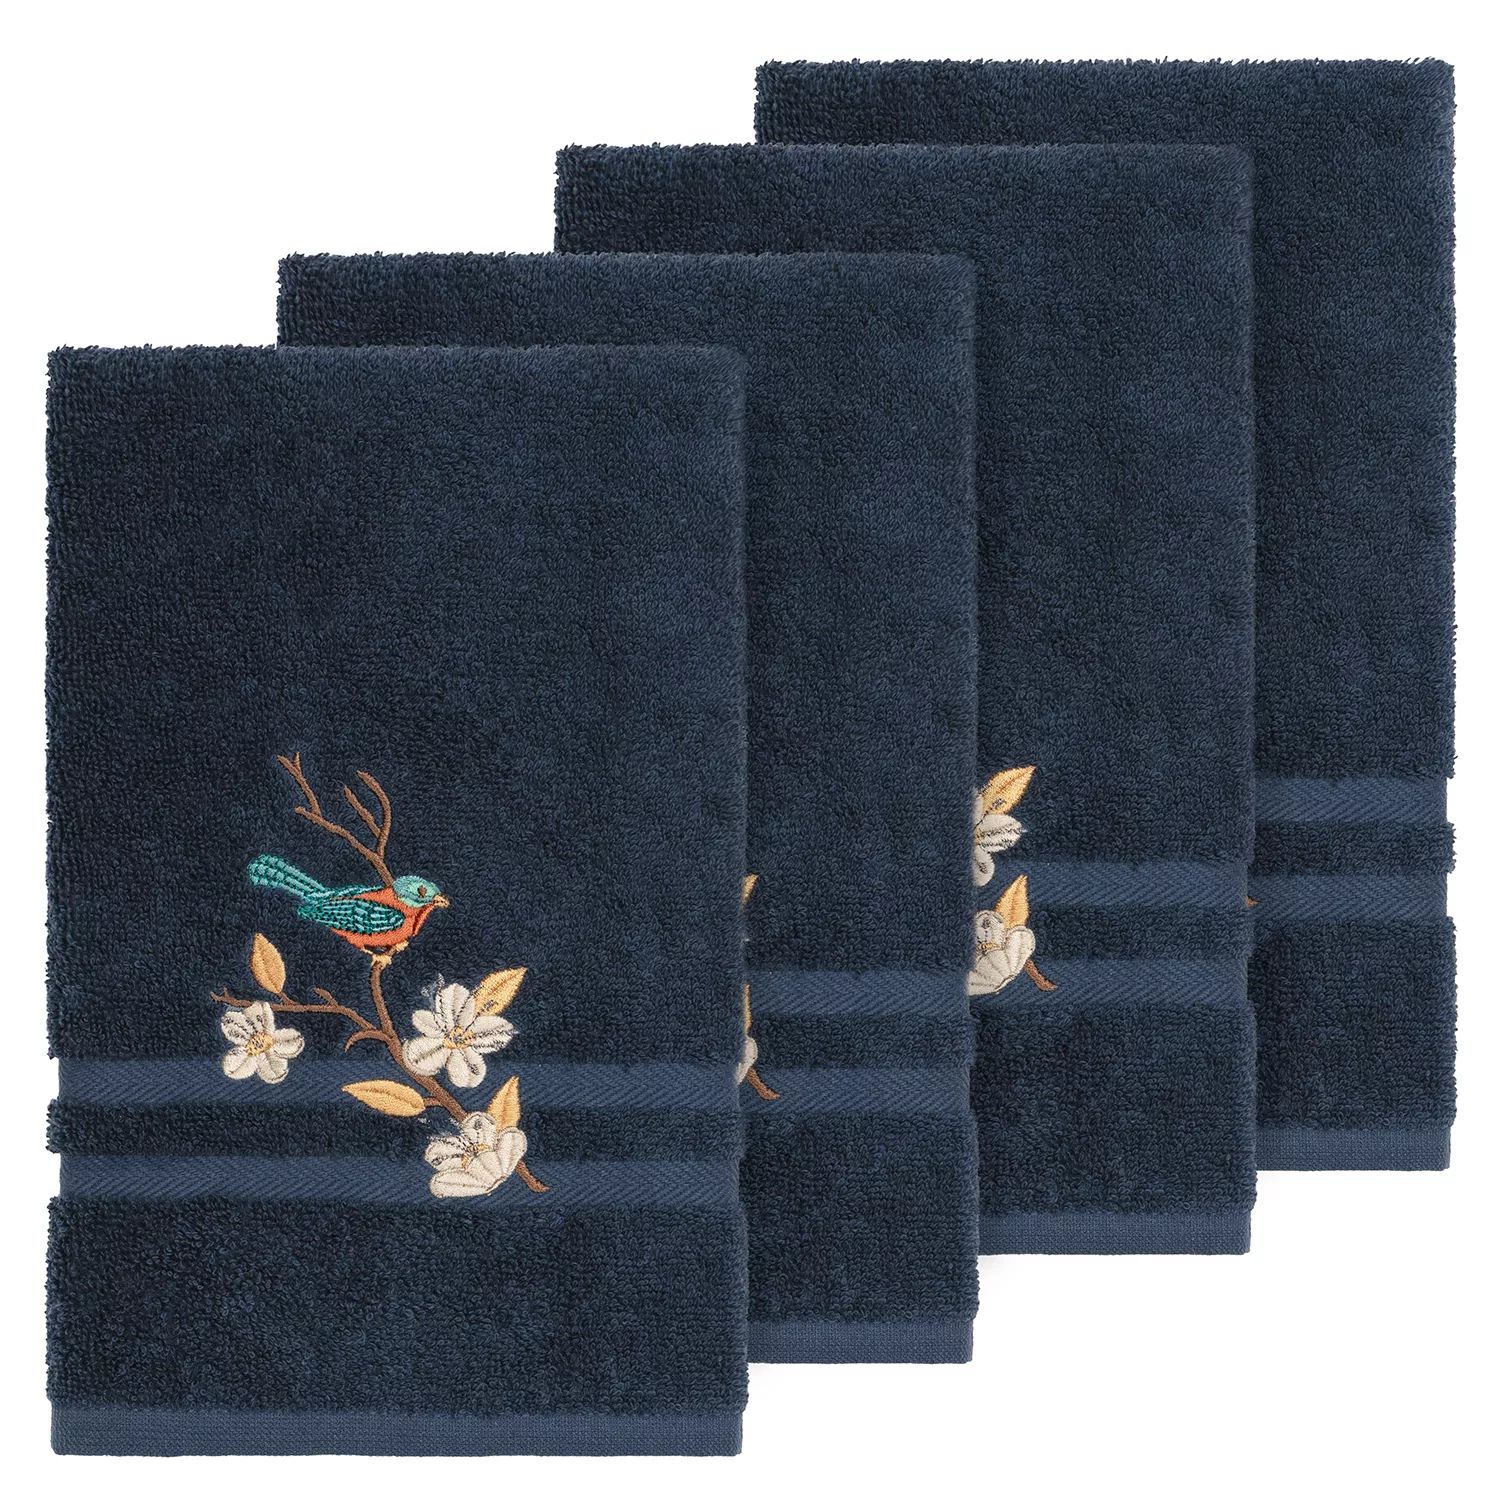 Linum Домашний текстиль Турецкий хлопок Весенний украшенный набор полотенец для рук, синий